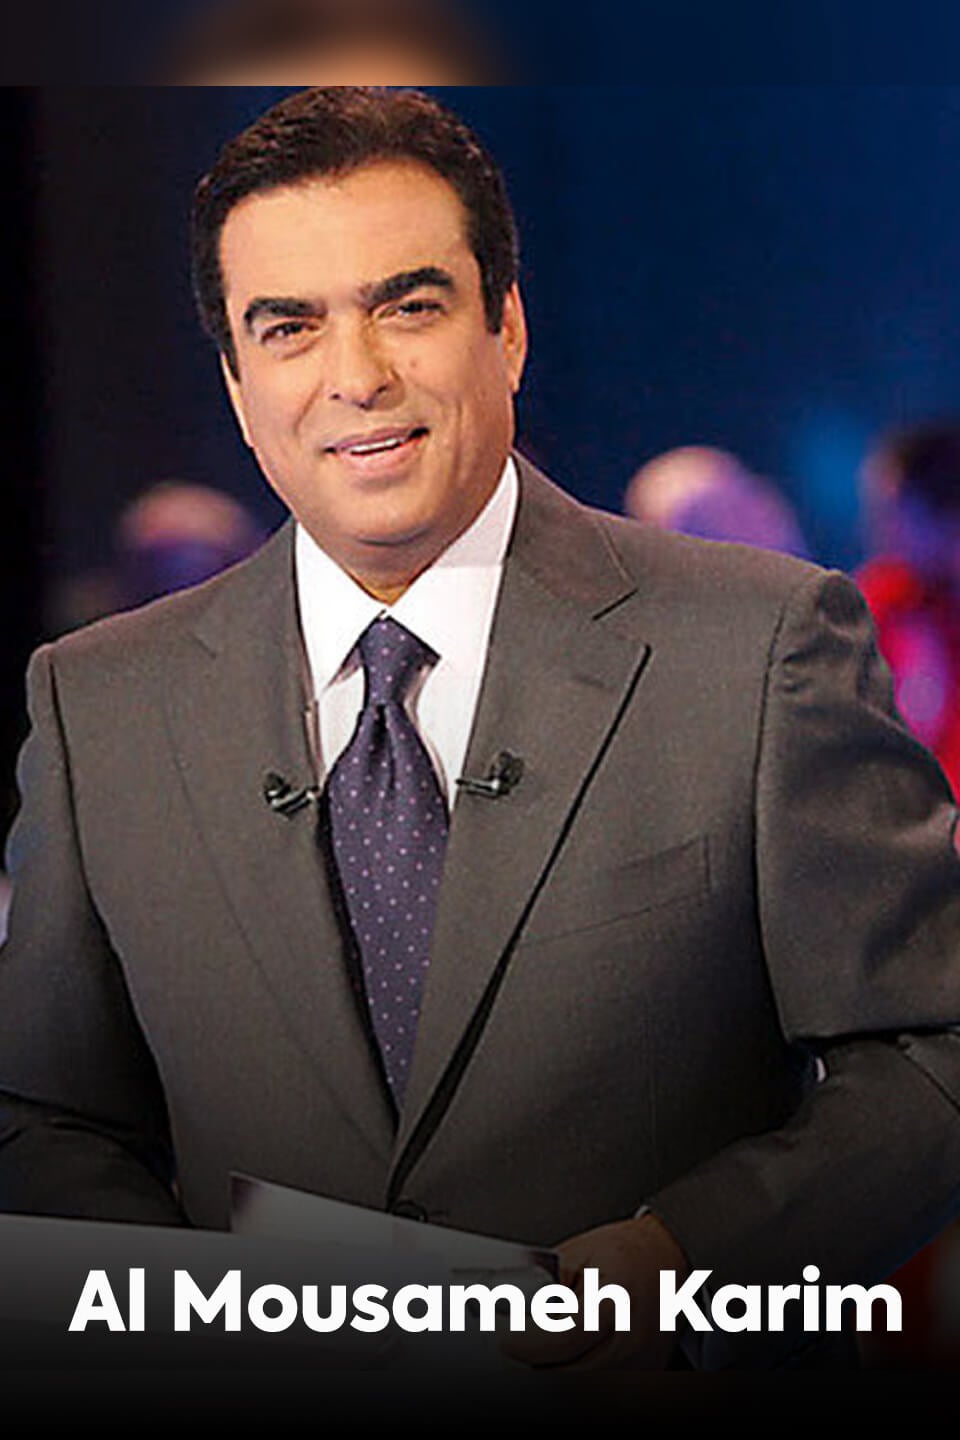 TV ratings for Al Mousameh Karim (المسامح كريم) in Chile. OSN TV series